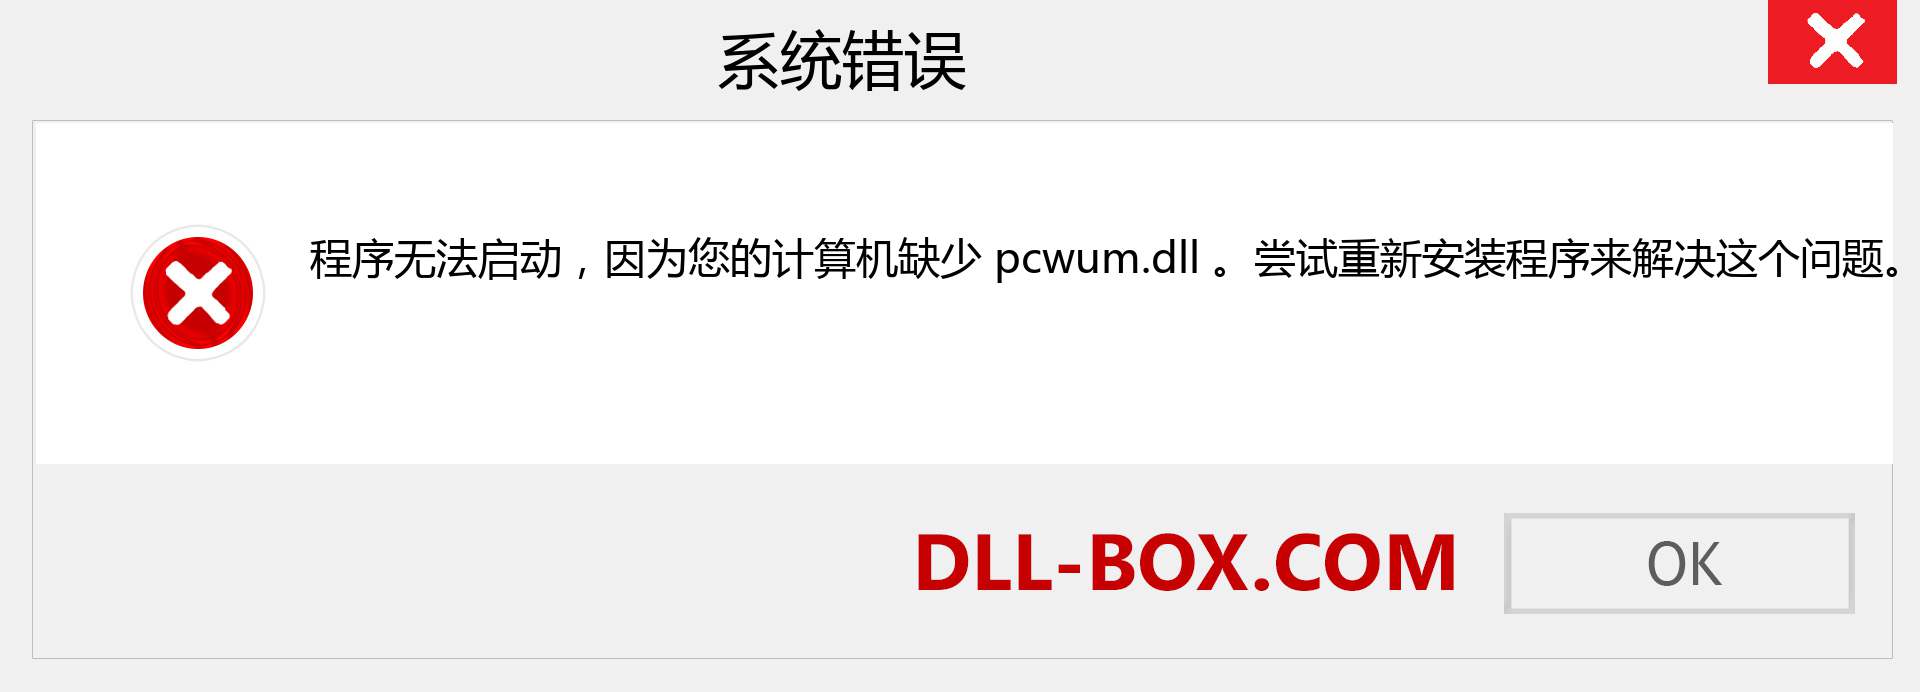 pcwum.dll 文件丢失？。 适用于 Windows 7、8、10 的下载 - 修复 Windows、照片、图像上的 pcwum dll 丢失错误